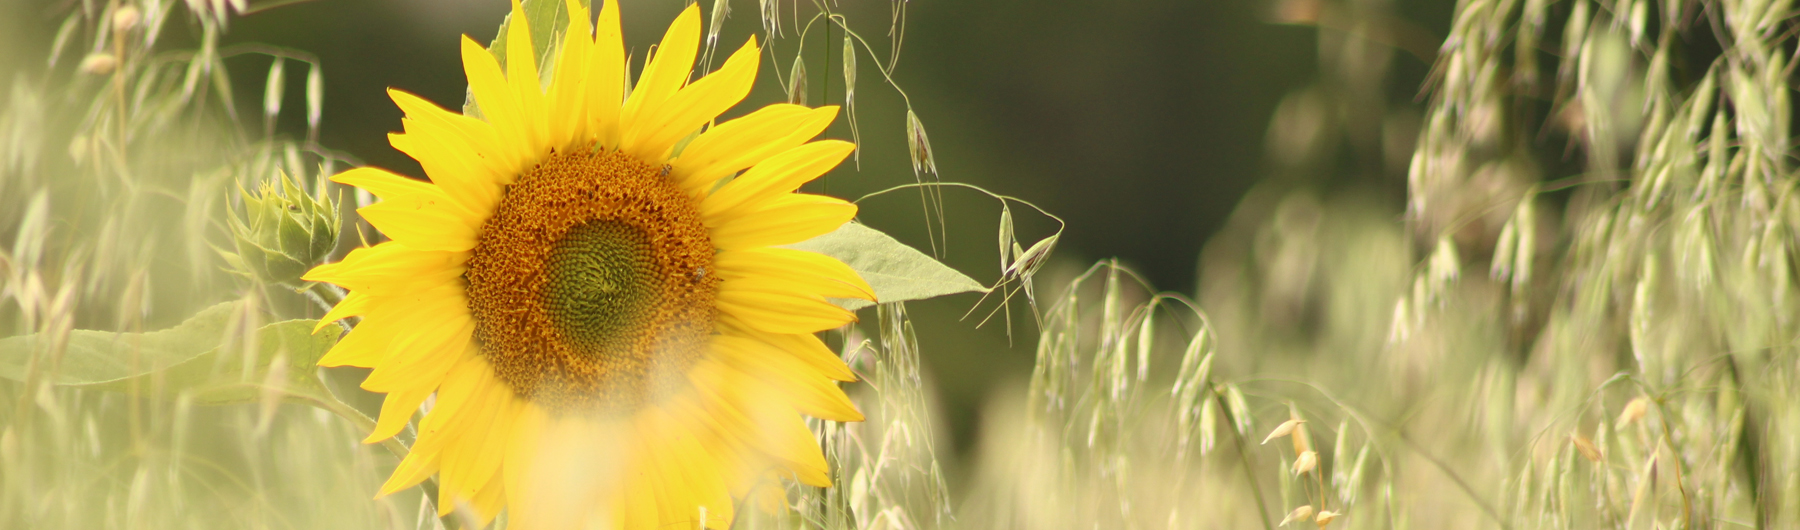 Sonnenblumen © Kloster Pernegg